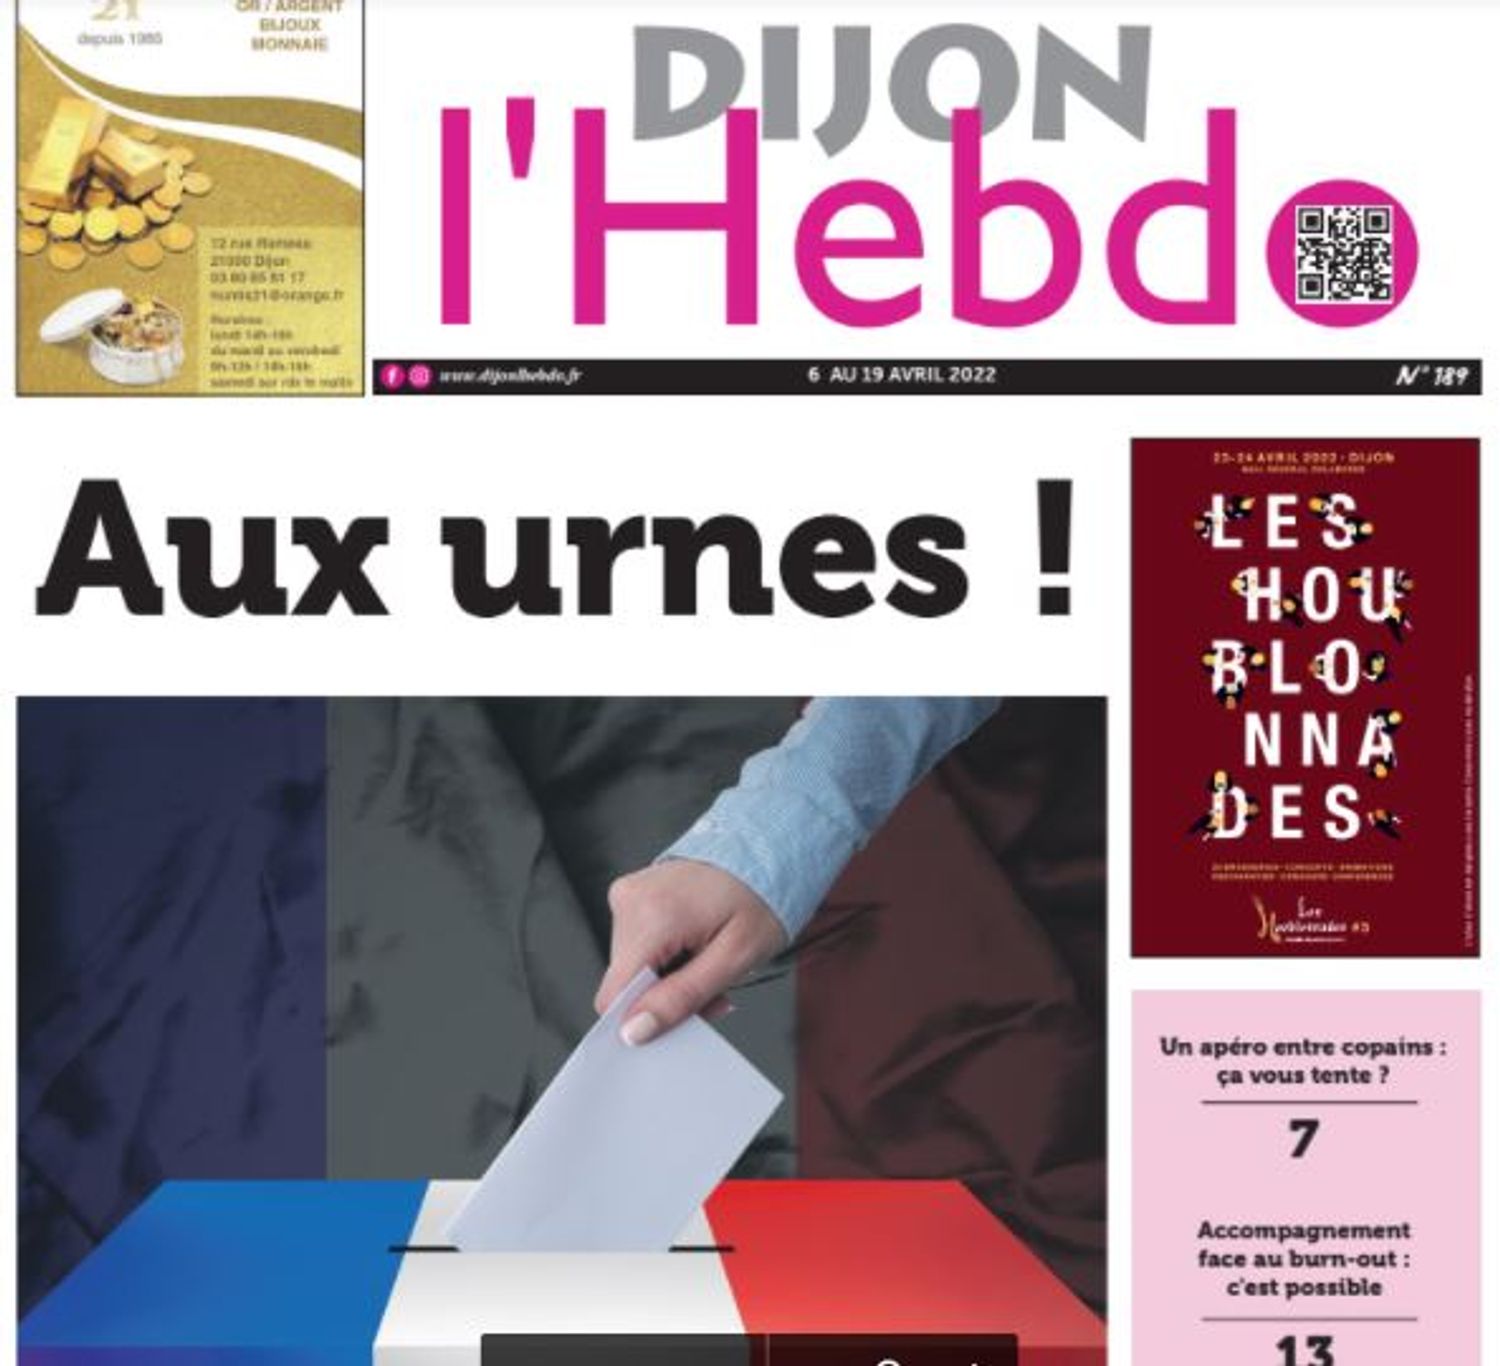 Le nouveau numéro du journal Dijon l’hebdo est paru ce mercredi 